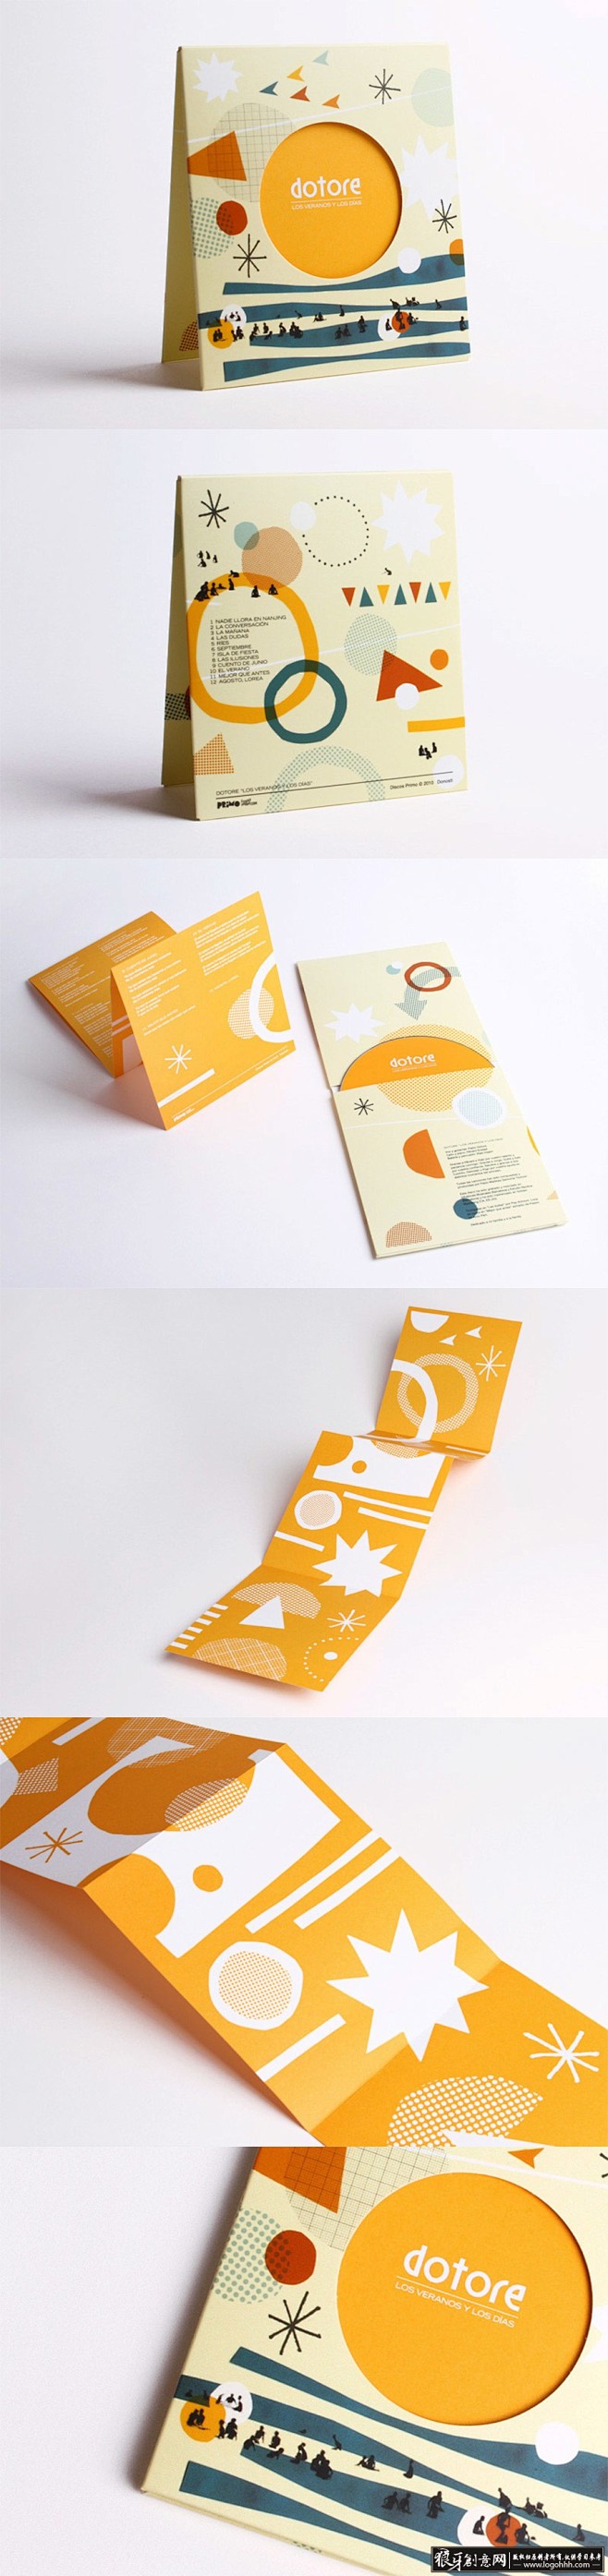 包装设计灵感 立体卡片 折页 雪花 圆形...